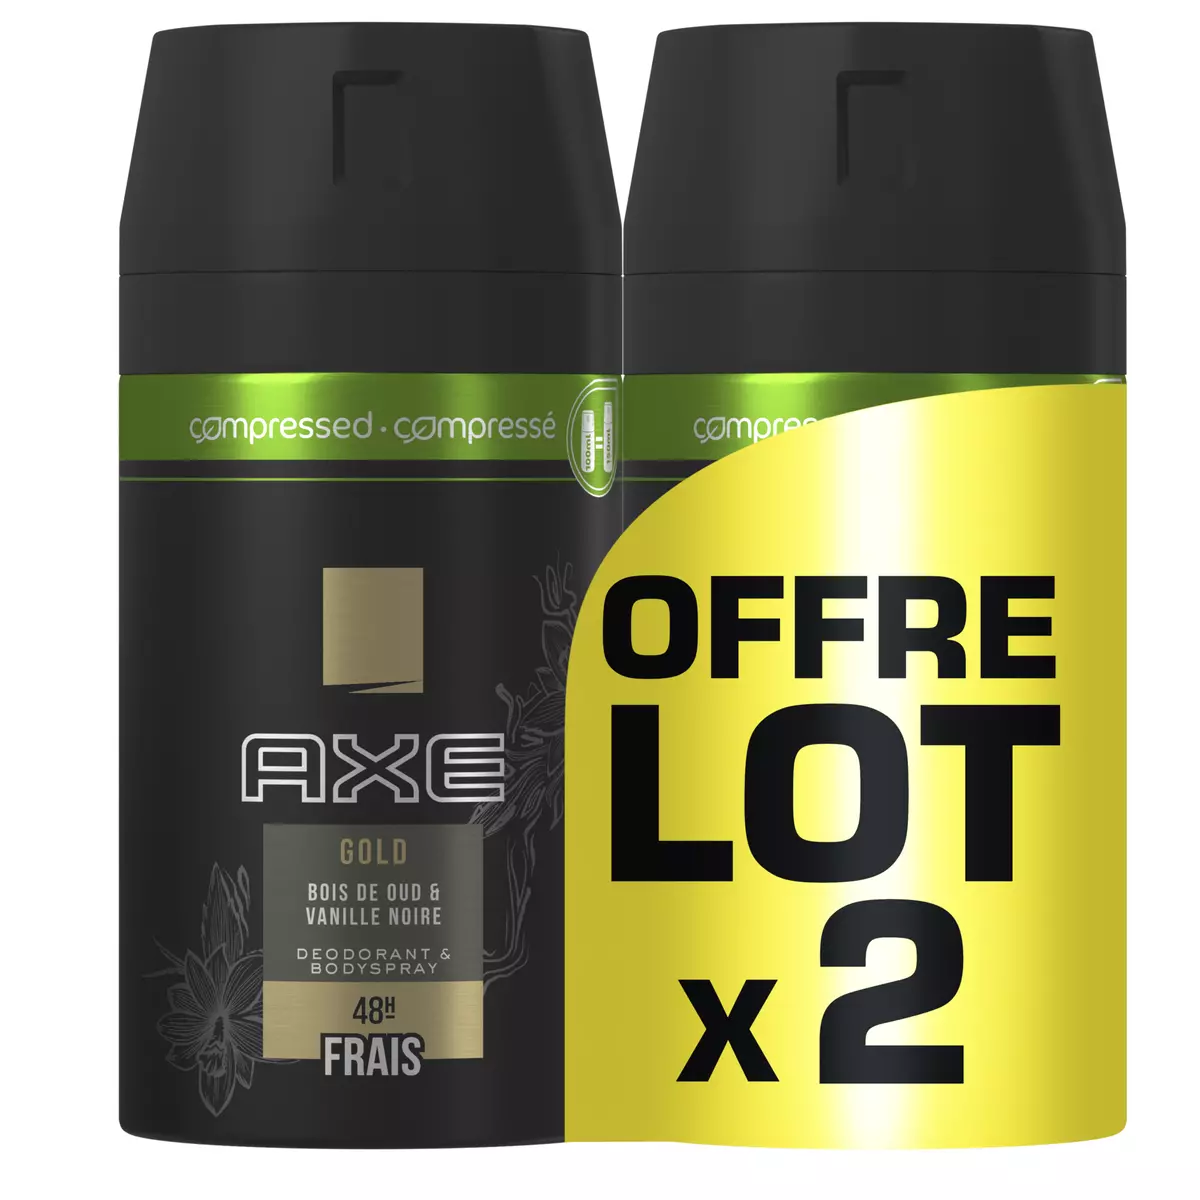 AXE Gold déodorant compressé 48h bois de oud & vanille noire 2x100ml